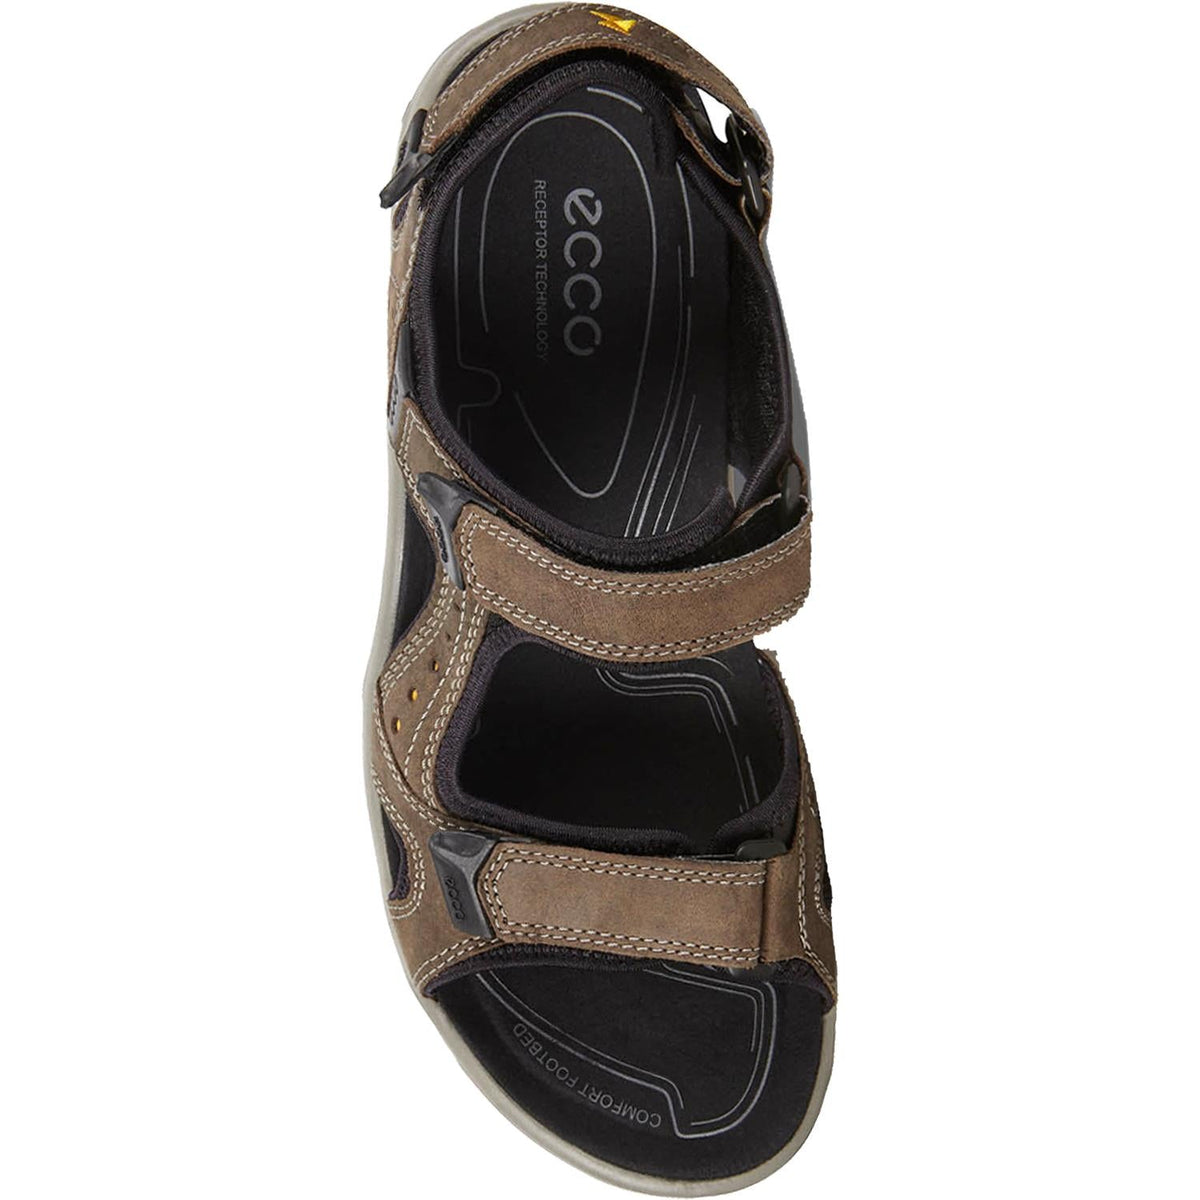 Ecco Yucatan Lite | Men's Outdoor Sandals | Footwear etc.